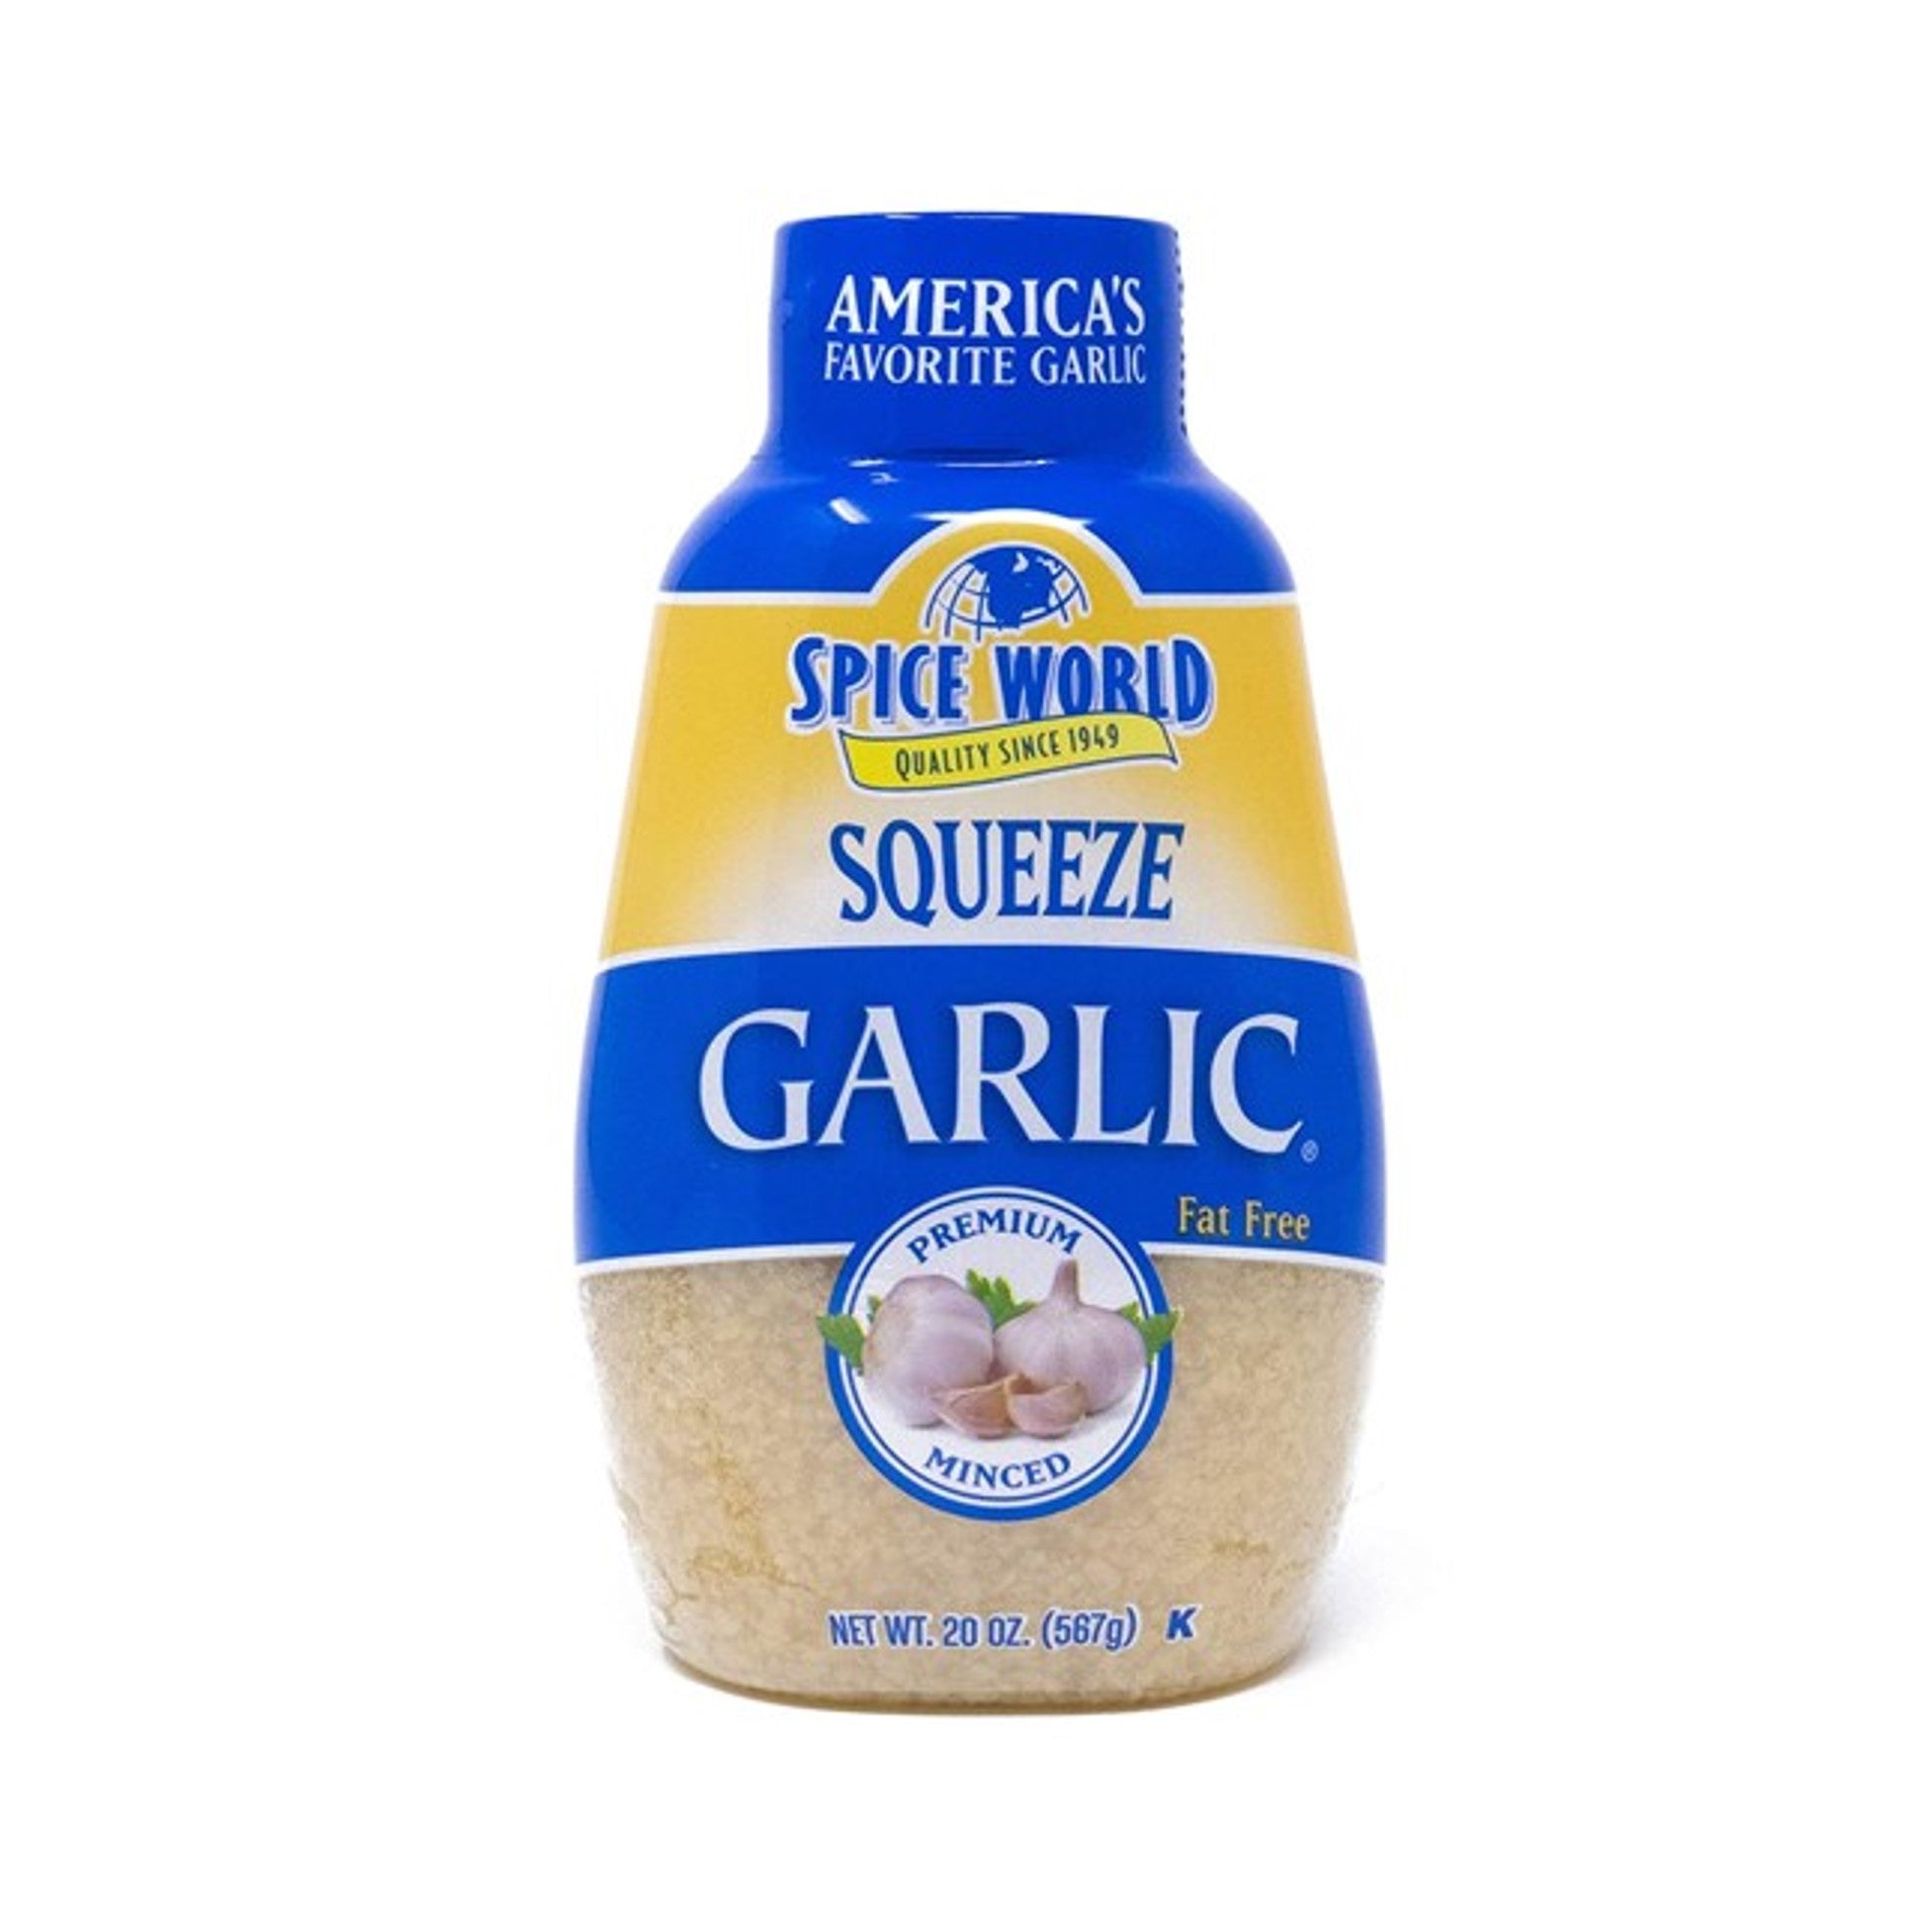 Spice World Squeeze Garlic 269g